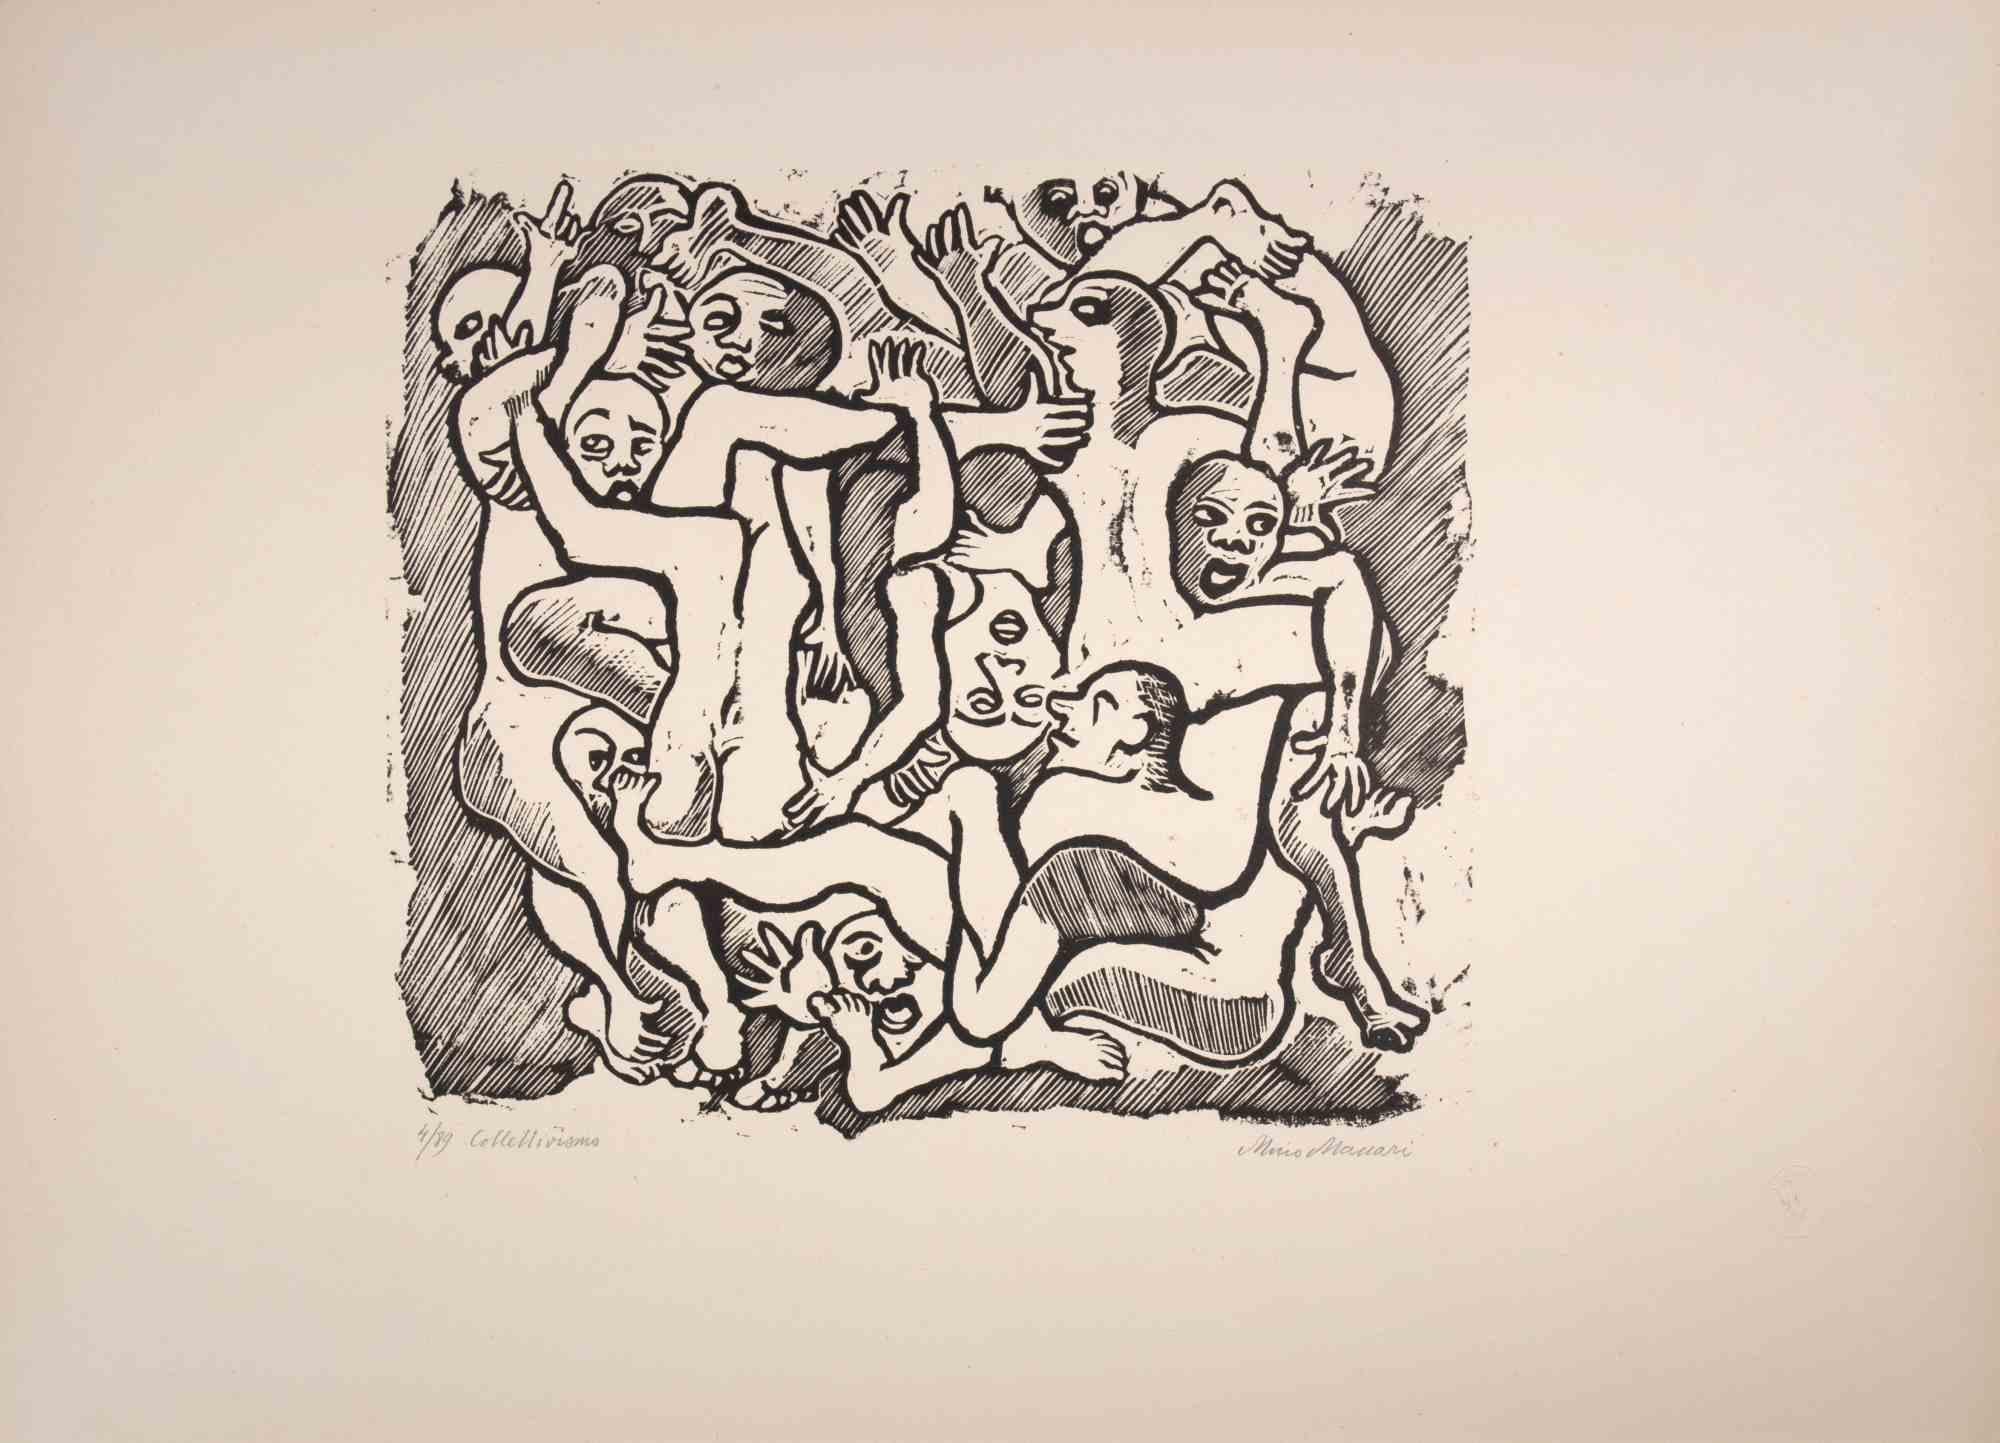 Le collectivisme est une œuvre d'art réalisée par Mino Maccari (1924-1989) au milieu du 20e siècle.

Gravure sur bois B./W. sur papier. Signé à la main dans la partie inférieure, numéroté 4/89 exemplaires et titré dans la marge gauche.

Bonnes